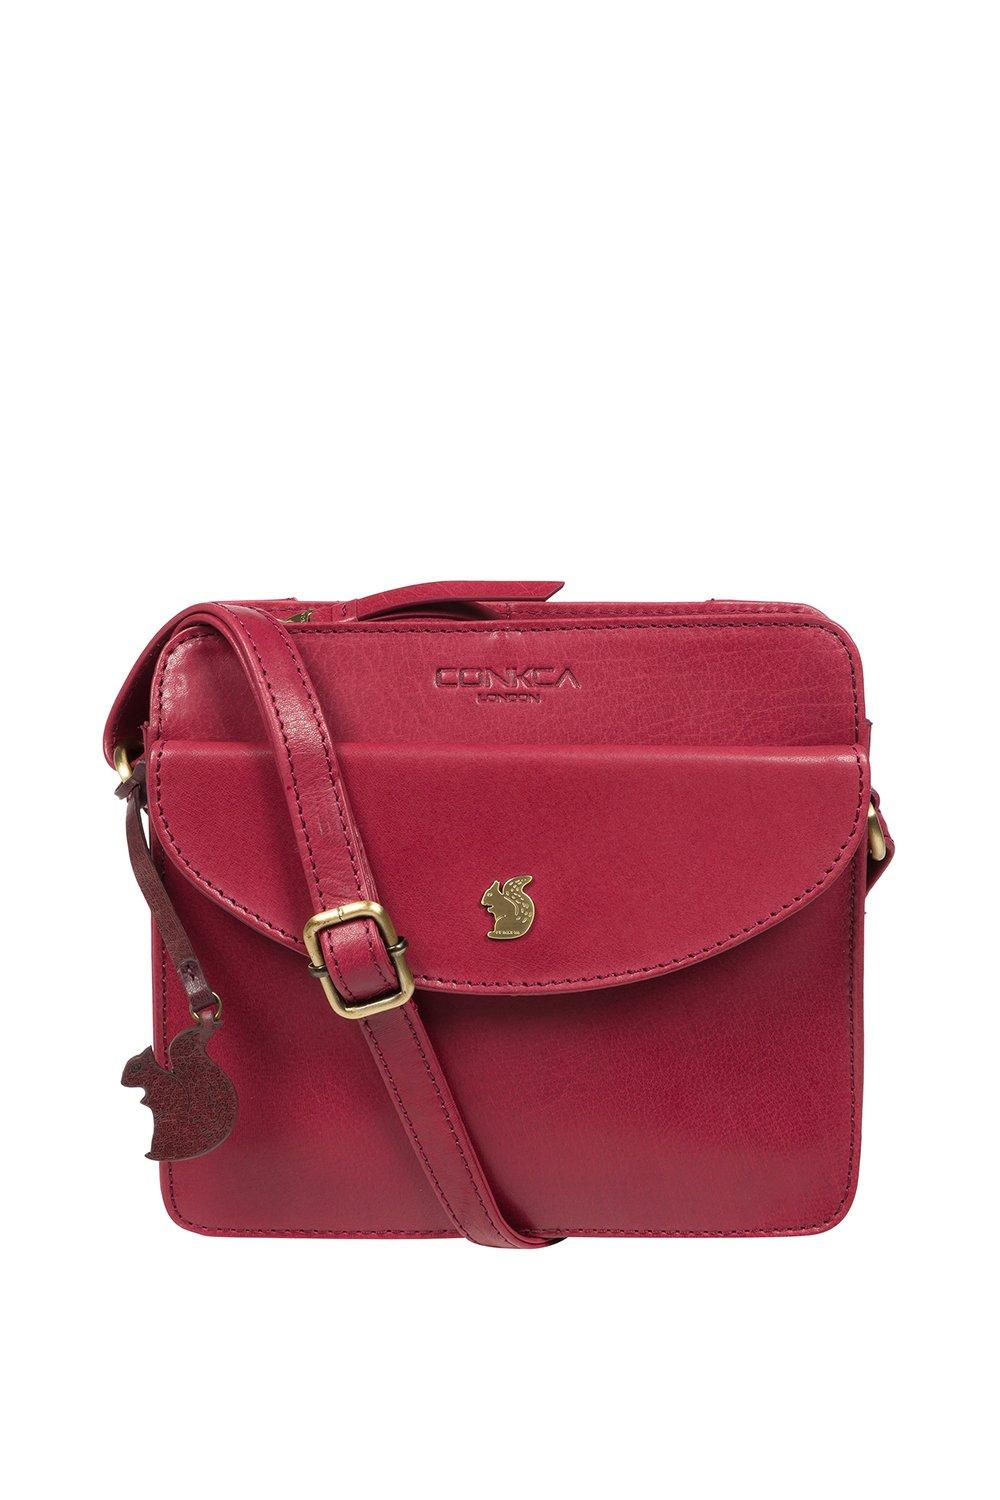 Кожаная сумка через плечо 'Magda' Conkca London, розовый платье magda с карманами 46 размер новое